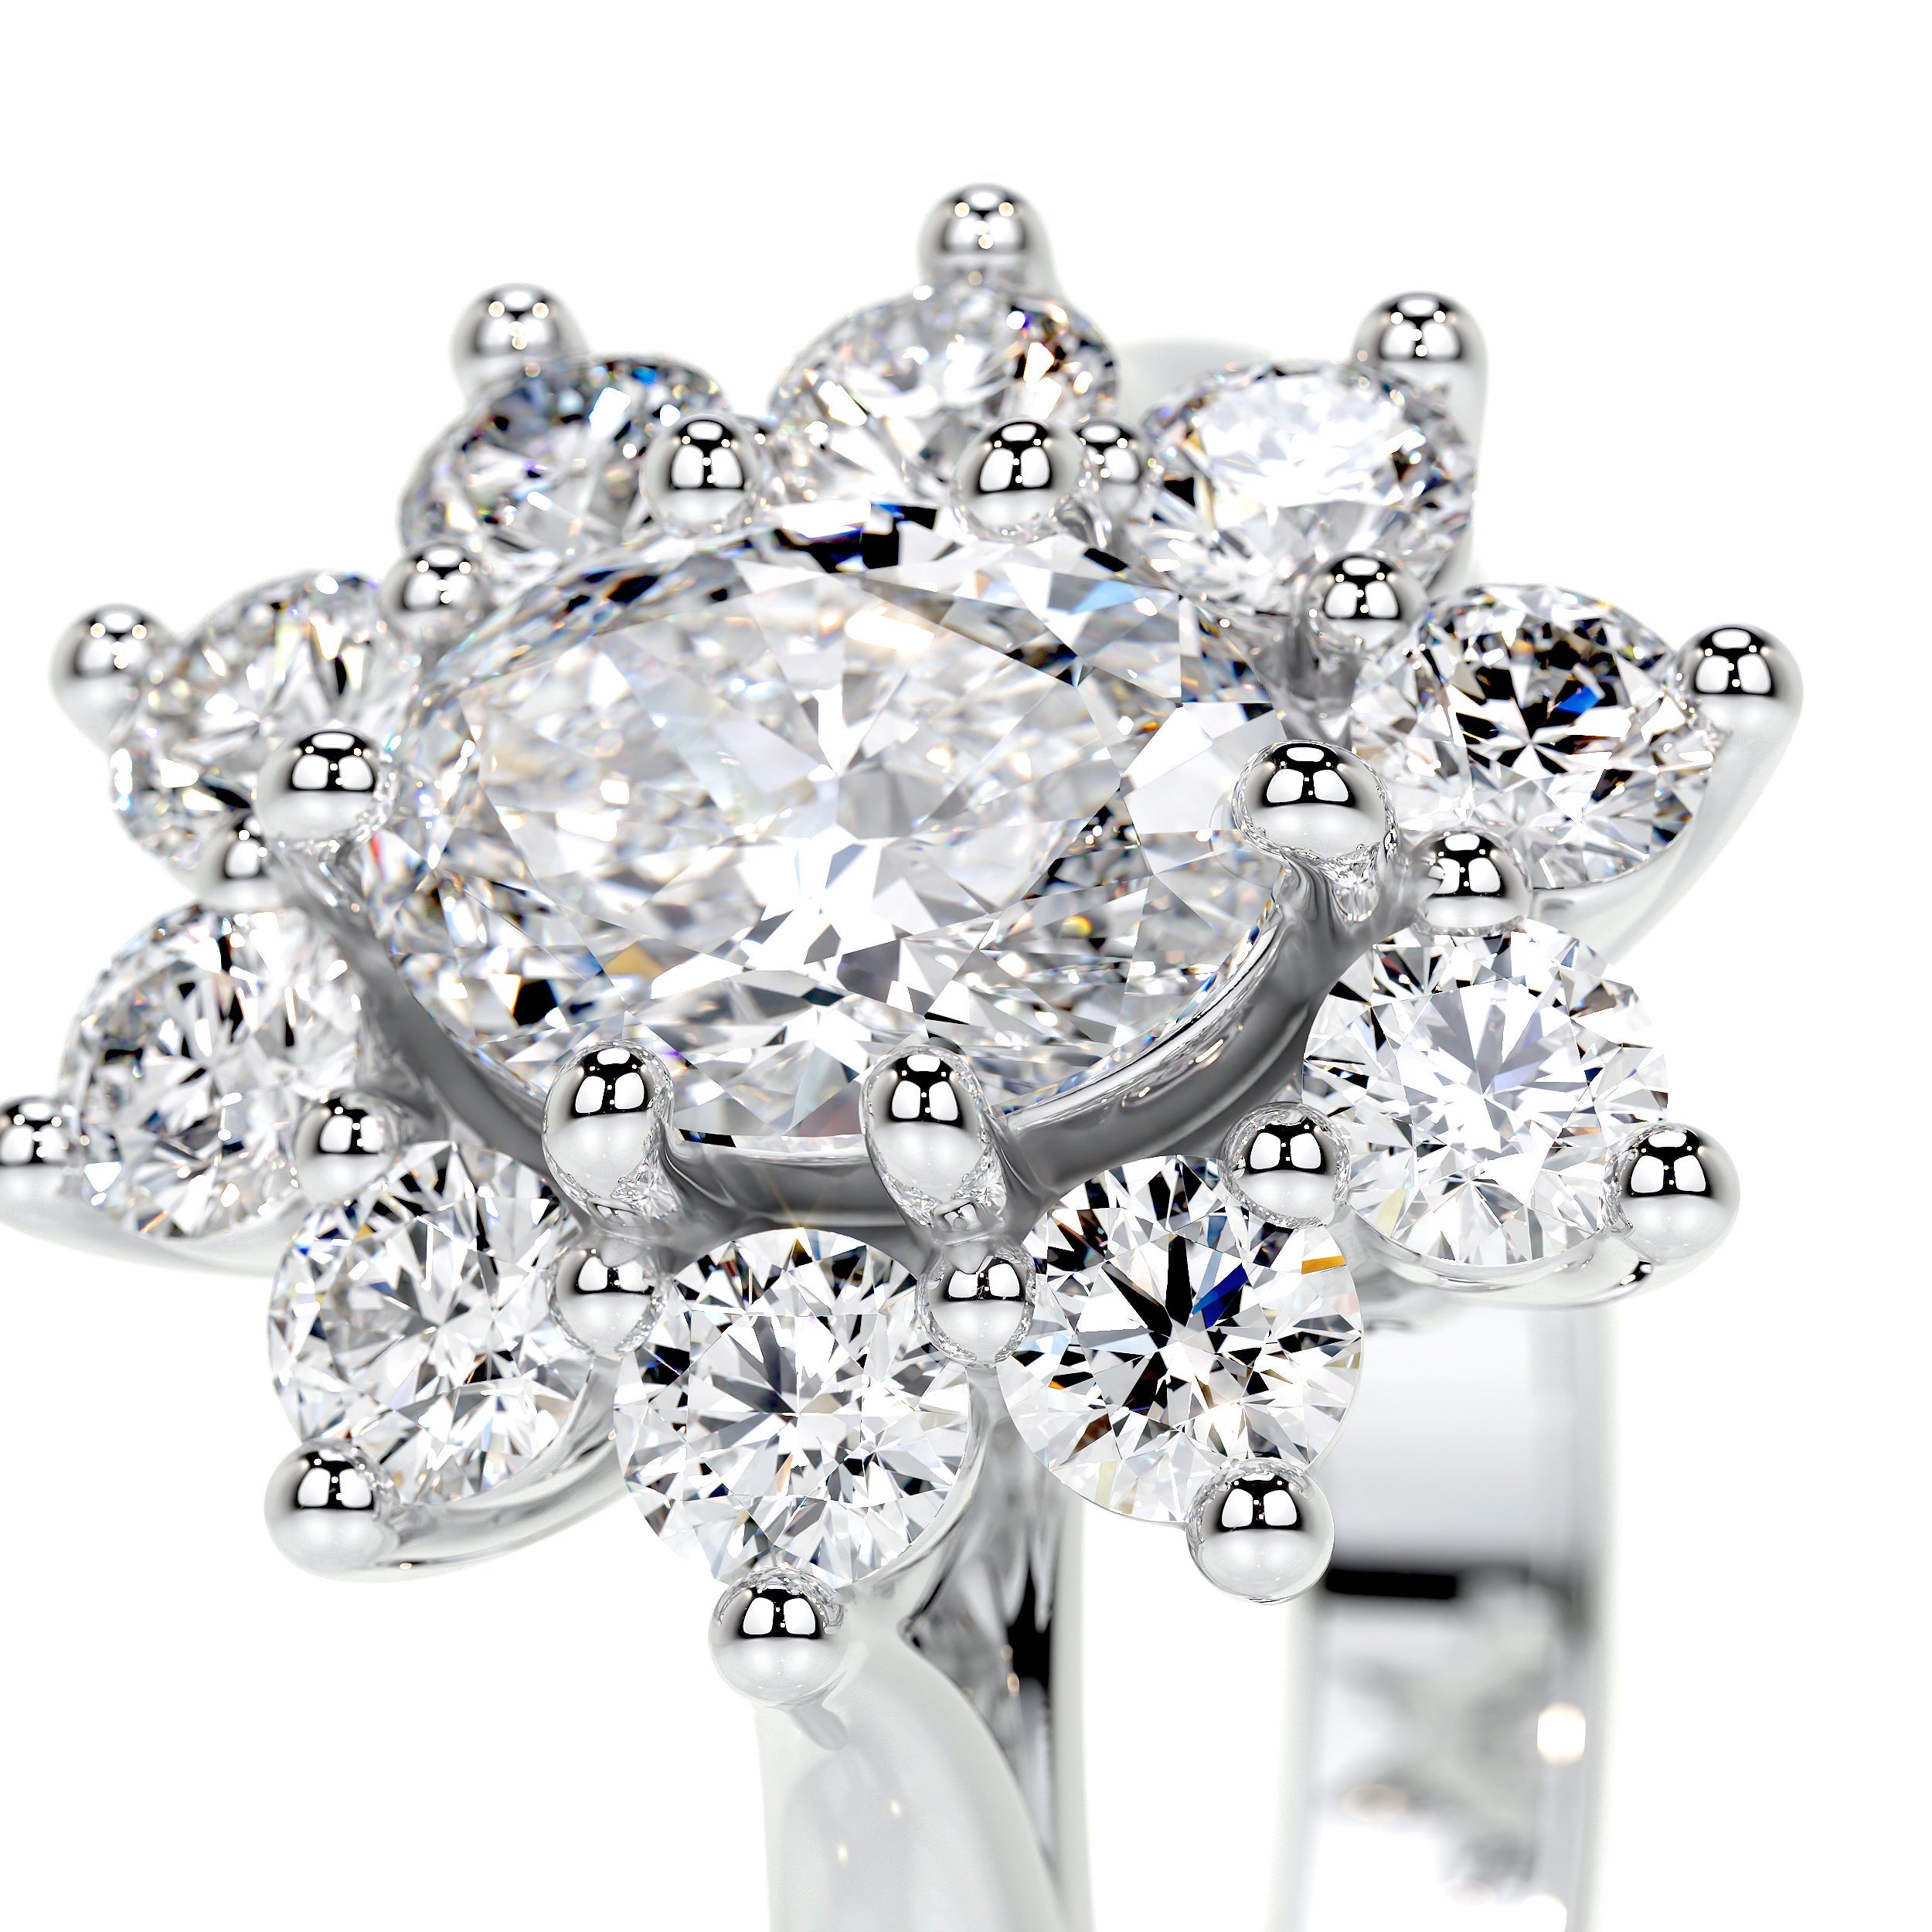 La Fleur Lab Grown Diamond Ring   (1.50 Carat) -14K White Gold